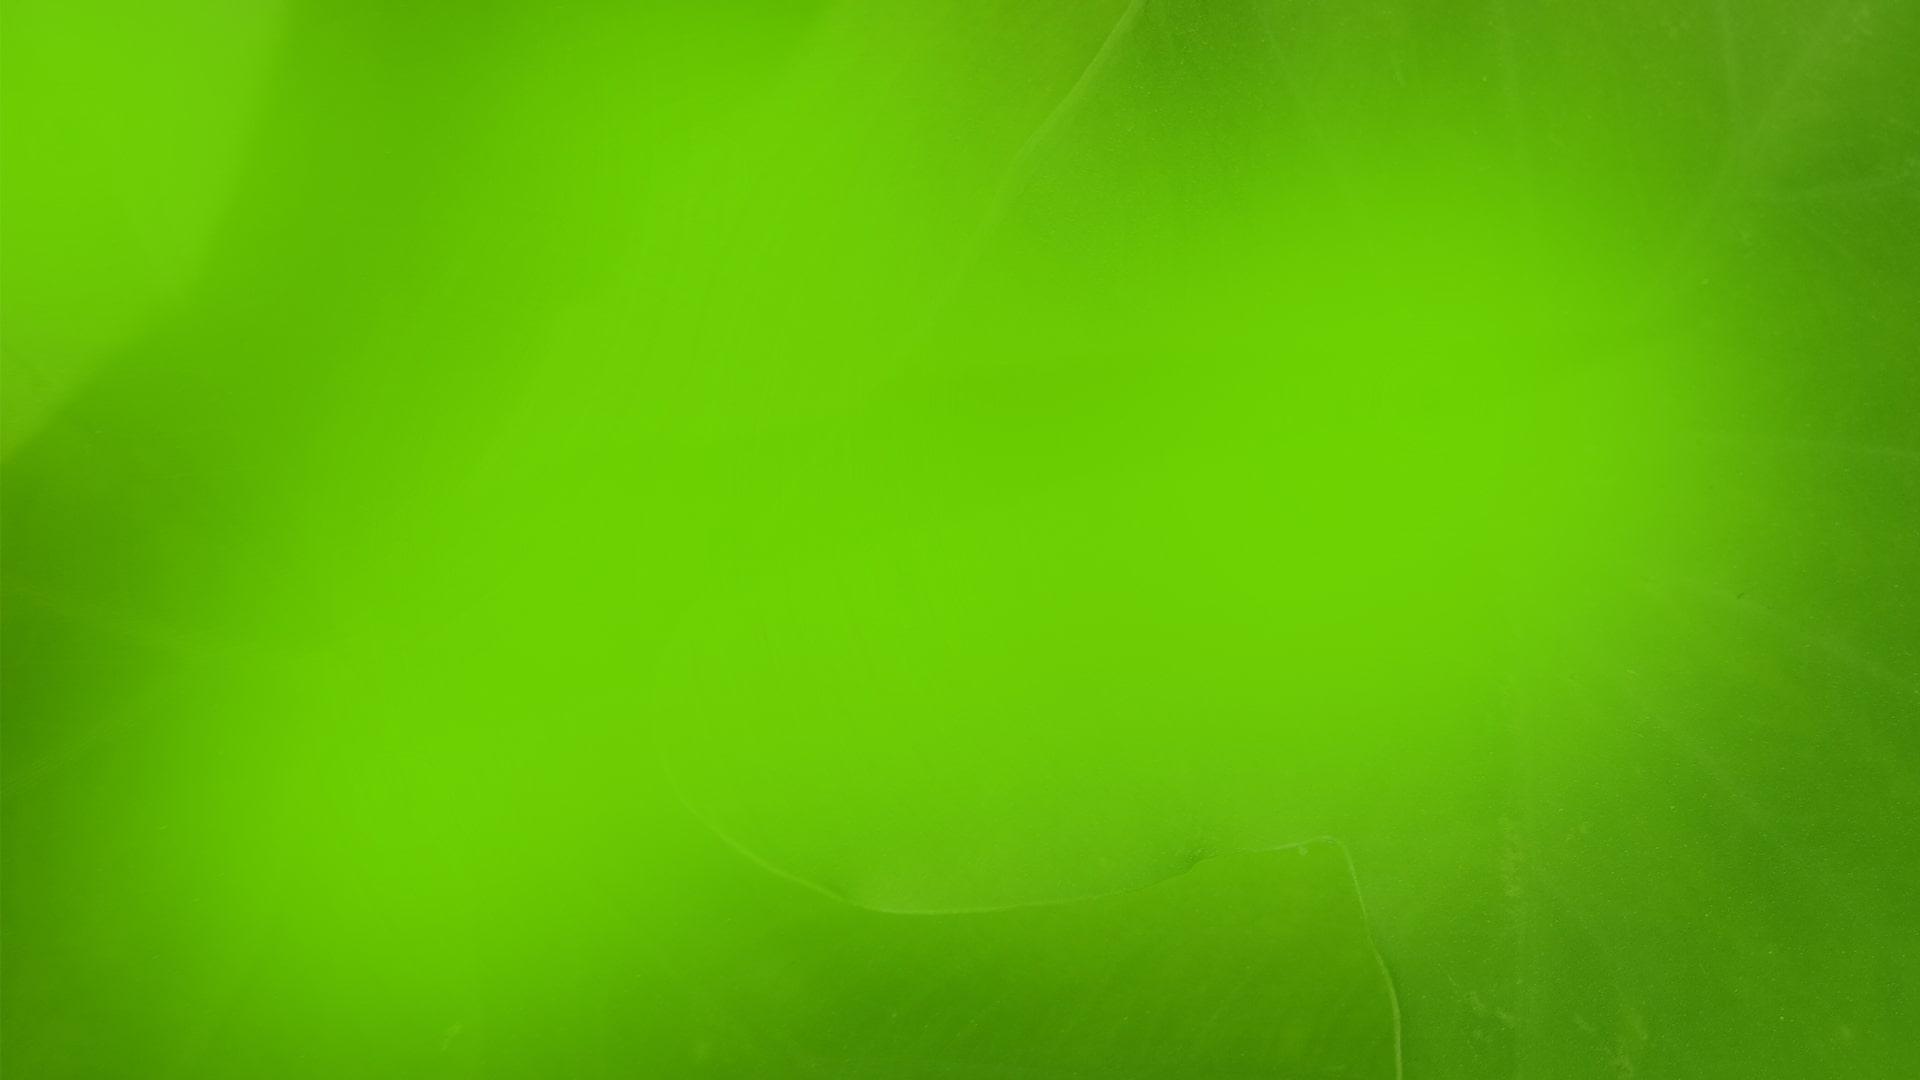 Hình nền biểu ngữ màu xanh lá cây là lựa chọn hoàn hảo cho những người yêu thích màu sắc tươi sáng và tươi mới. Hãy cùng khám phá những hình ảnh liên quan đến hình nền biểu ngữ màu xanh lá cây và tạo ra những trang trí độc đáo cho máy tính hoặc điện thoại của bạn!